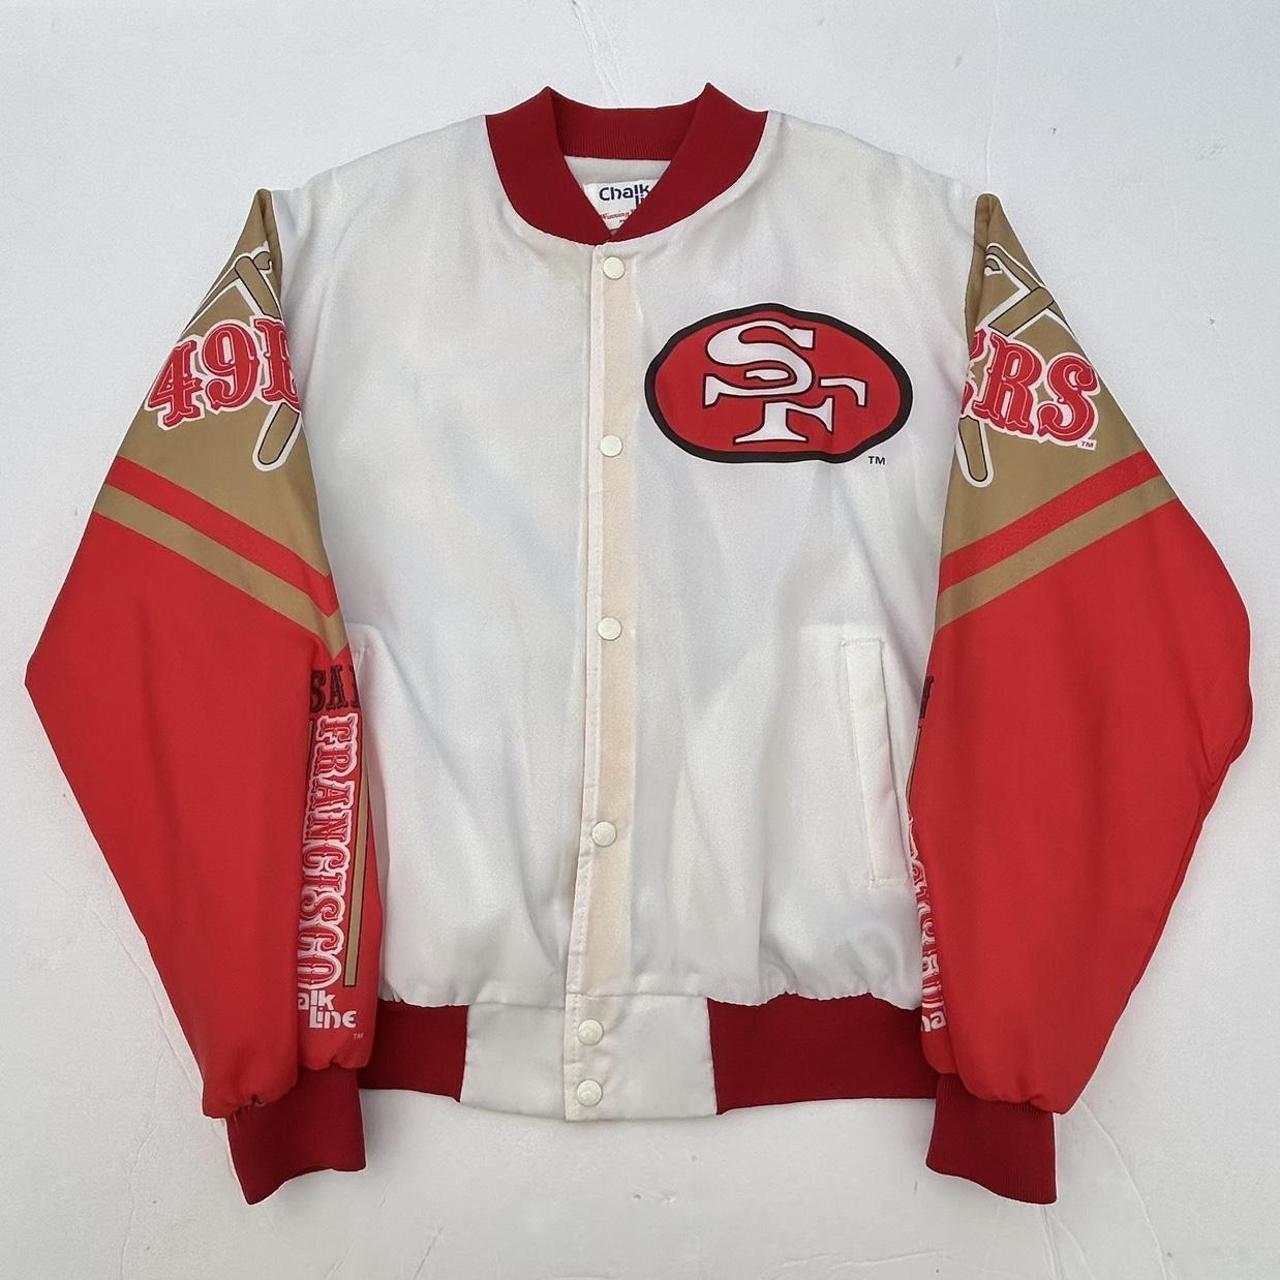 Vintage San Francisco Giants Satin Chalk Line jacket - Depop